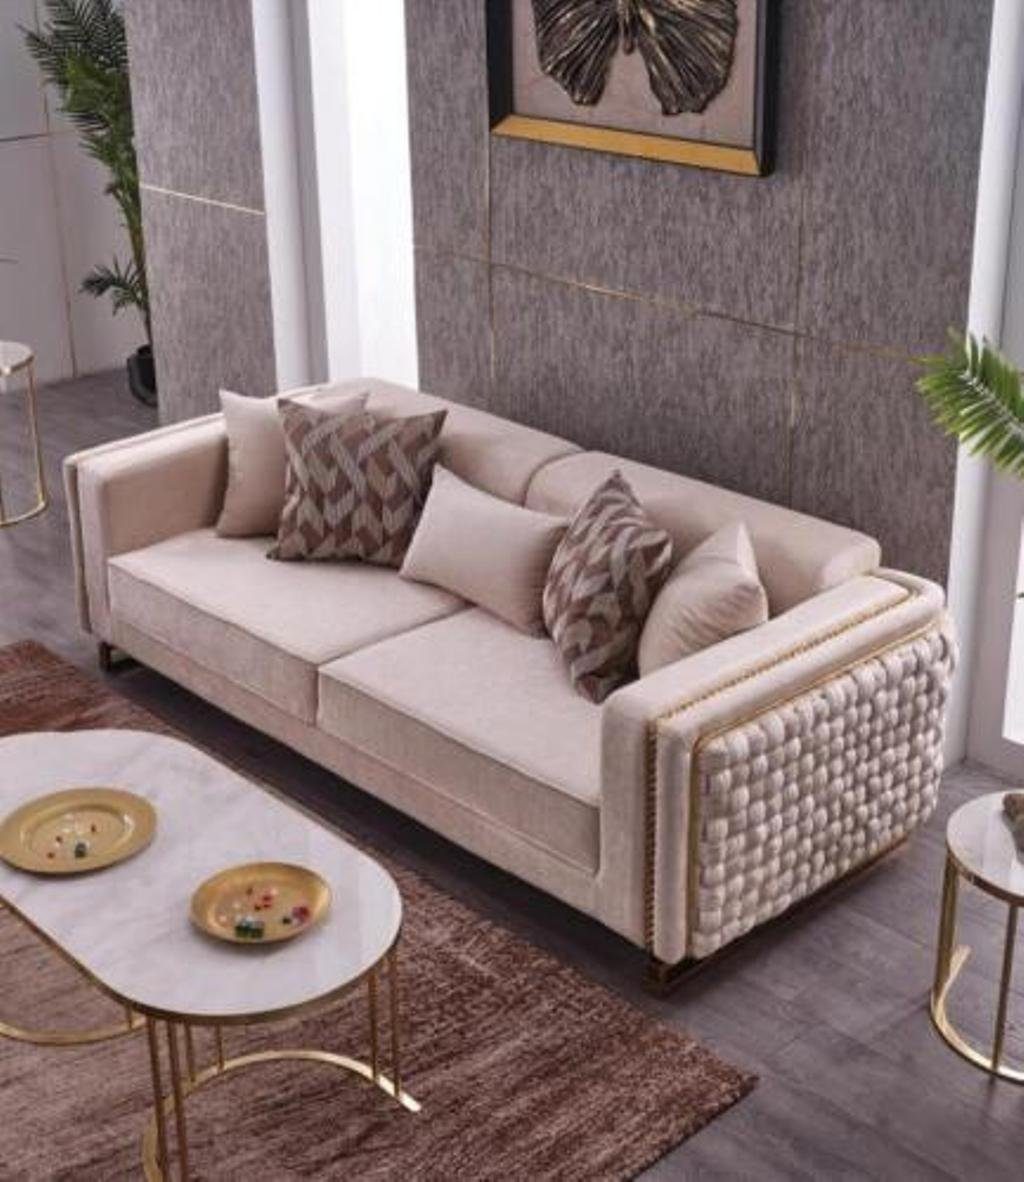 JVmoebel 3-Sitzer Dreisitzer Textil Stoff Teile, Europa in Made Möbel, Sitzer Sofa Wohnzimmer Polster Couch 3 1